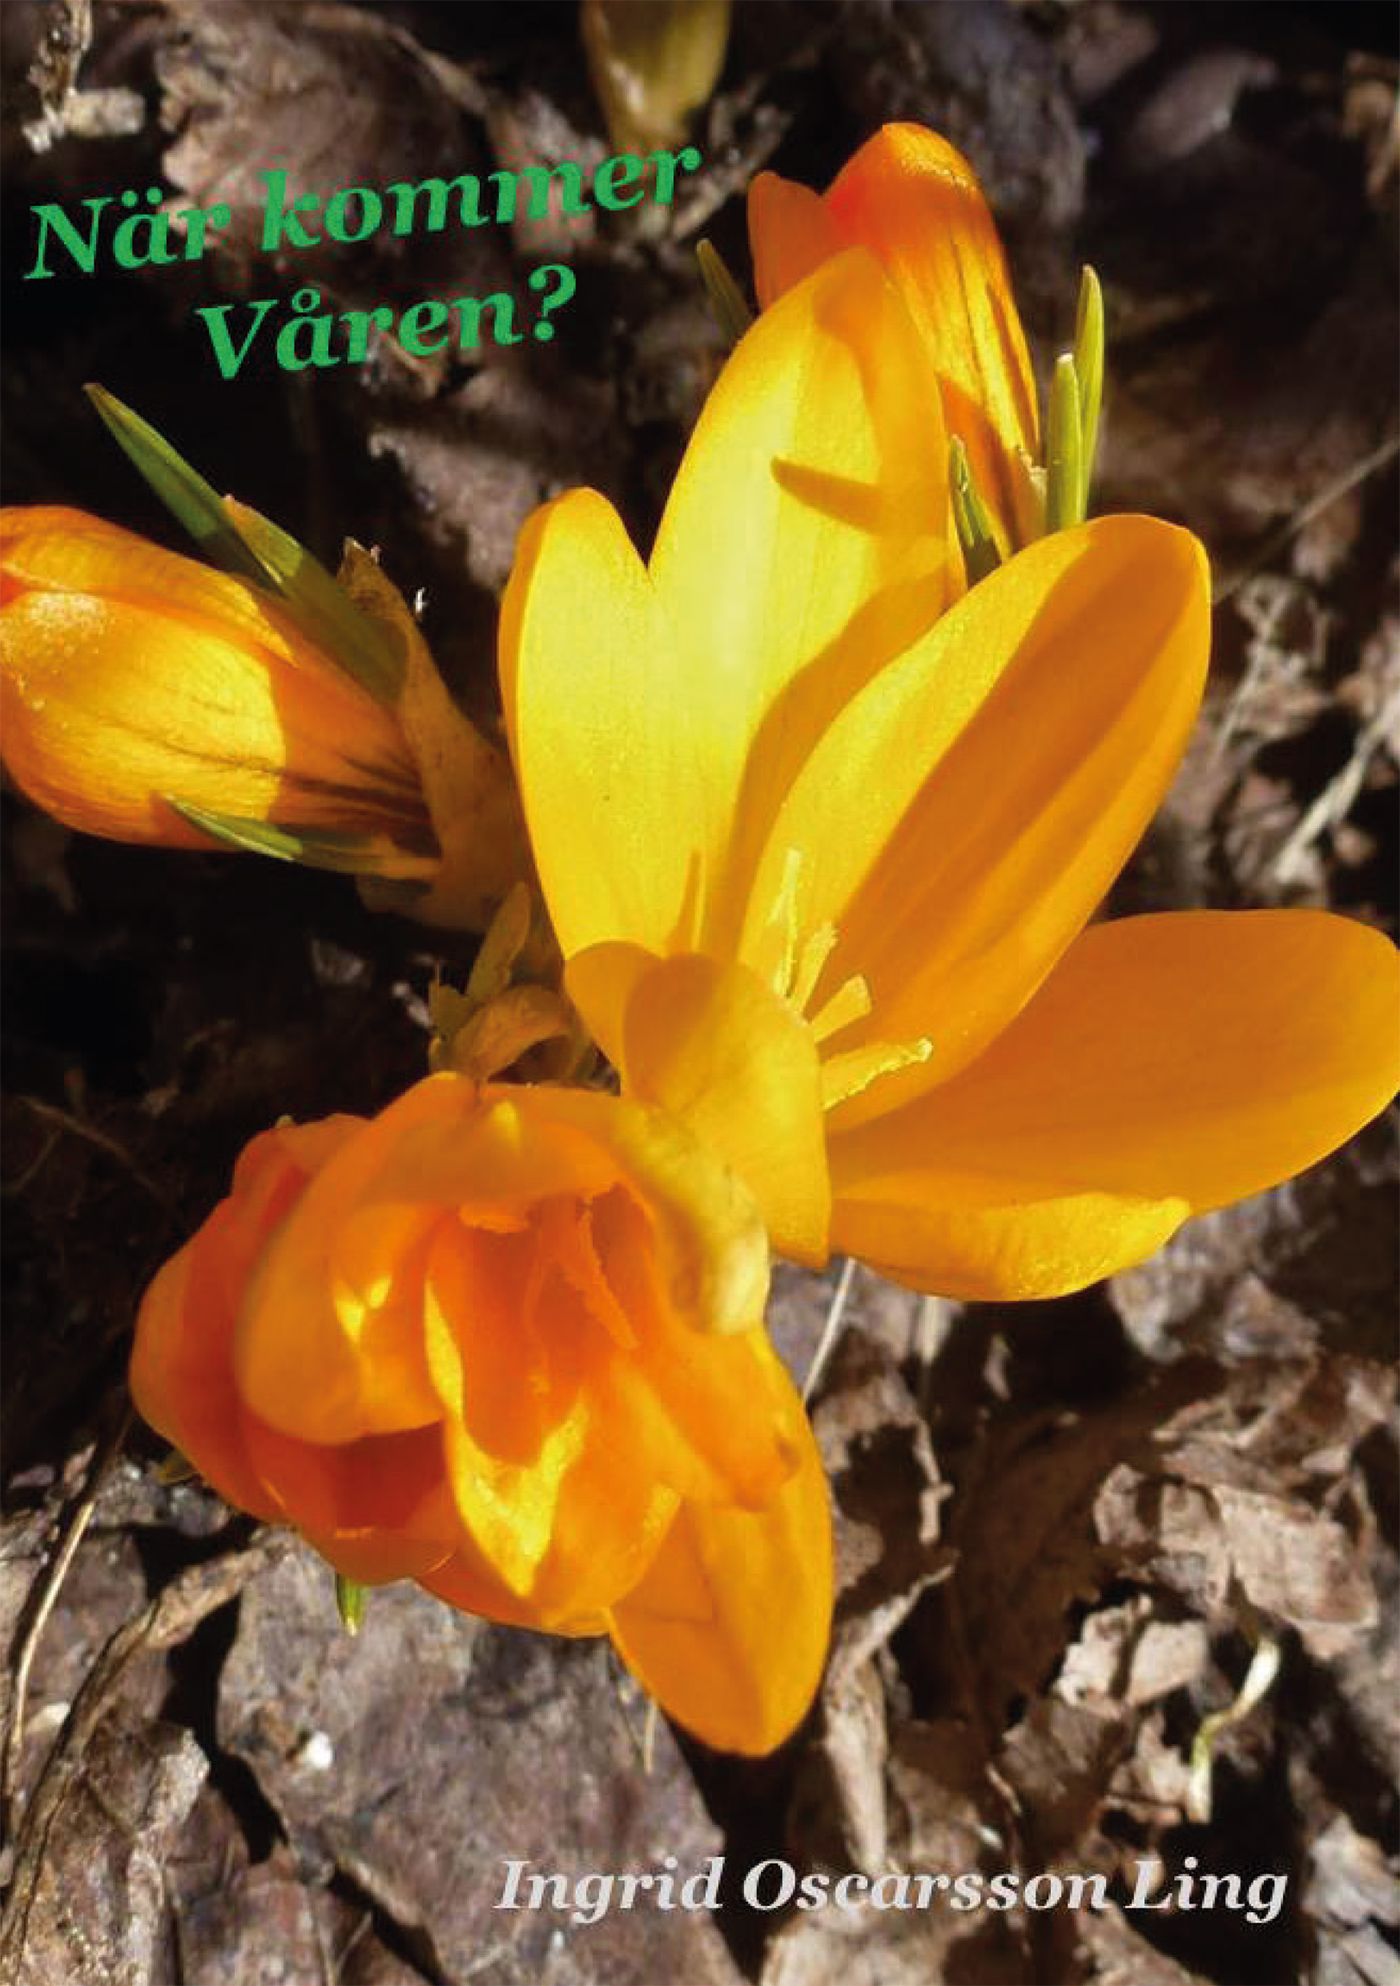 När kommer våren?, eBook by Ingrid Oscarsson Ling